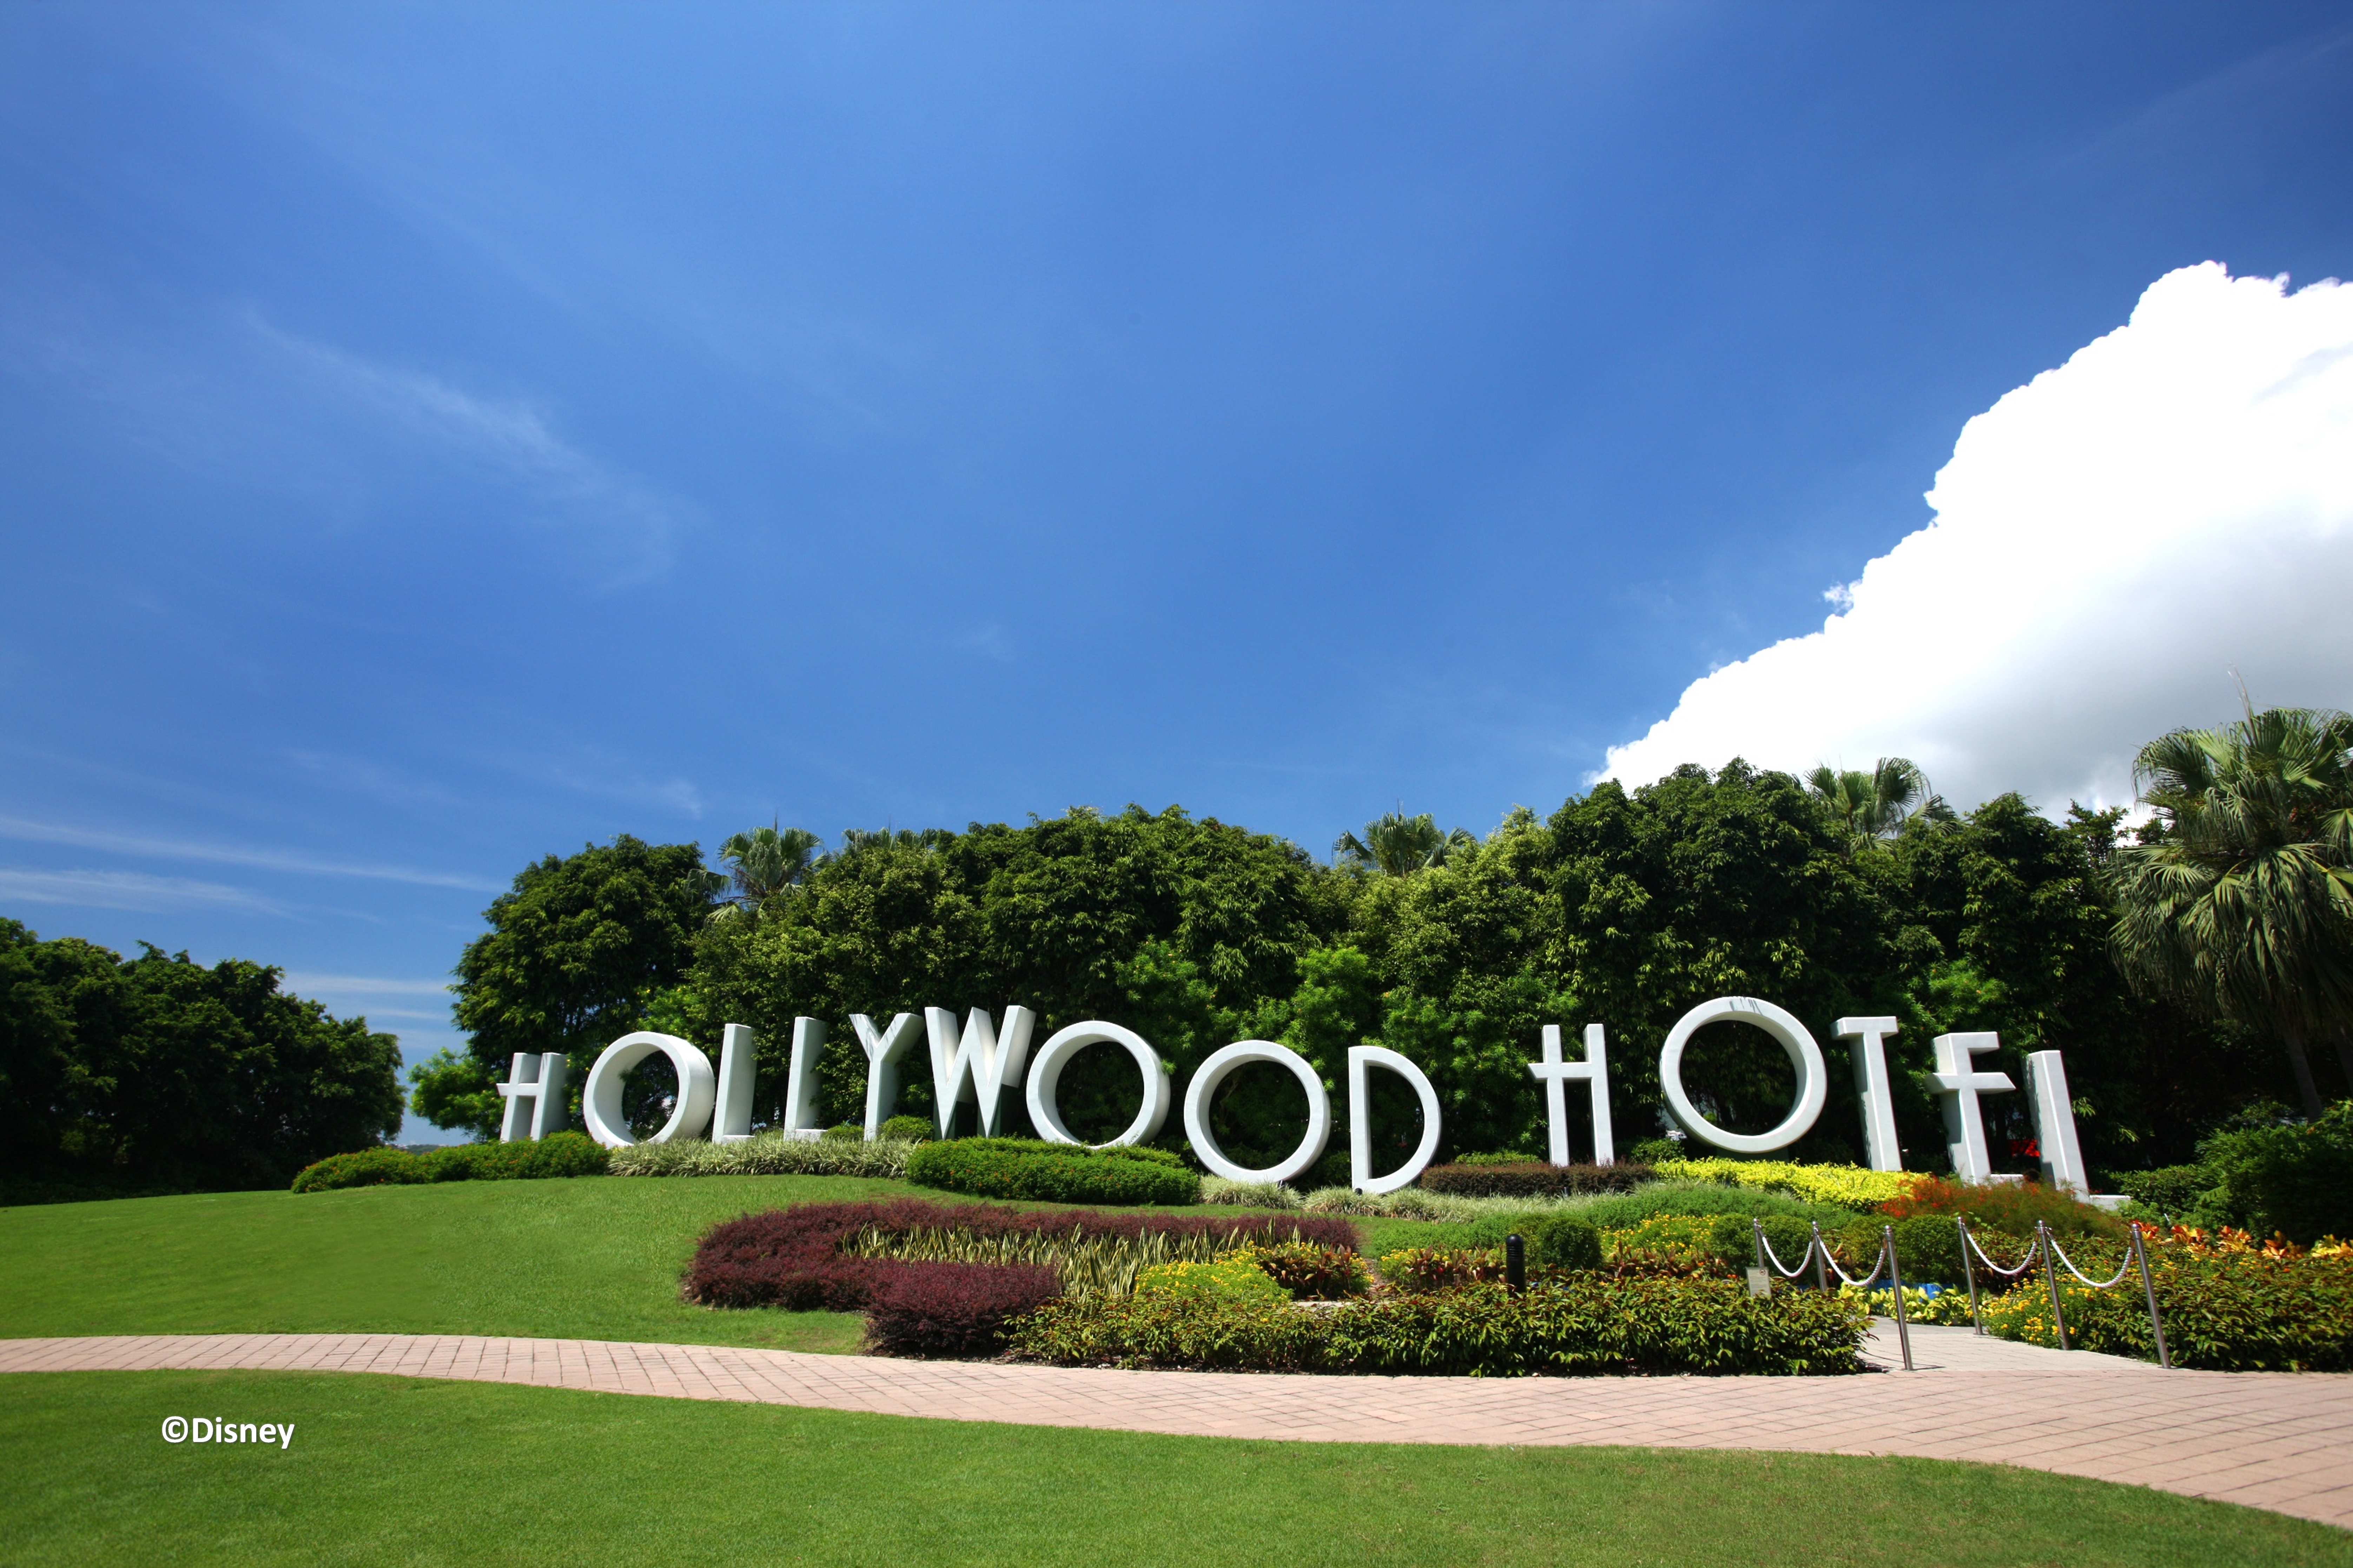 ディズニー ハリウッド ホテル Disney S Hollywood Hotel 宿泊予約 楽天トラベル